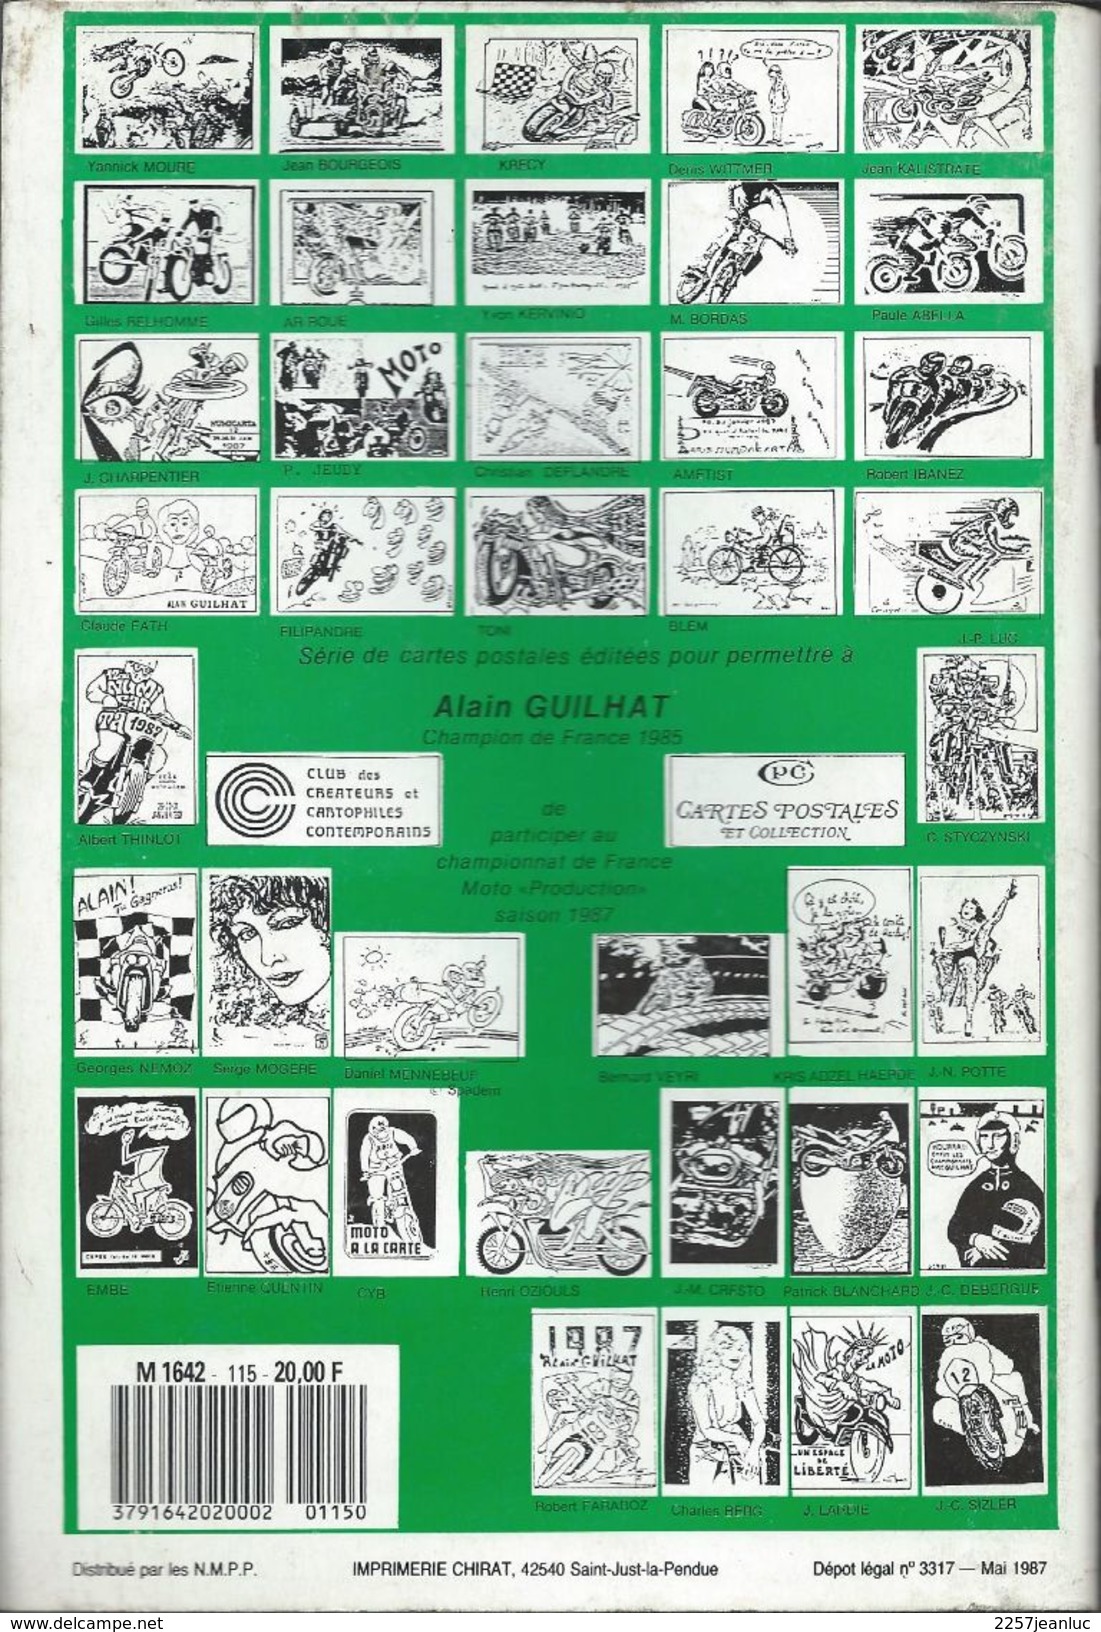 Cartes Postales Et Collections Juin1987  Magazines N: 115 Llustration &  Thèmes Divers 98 Pages - Français